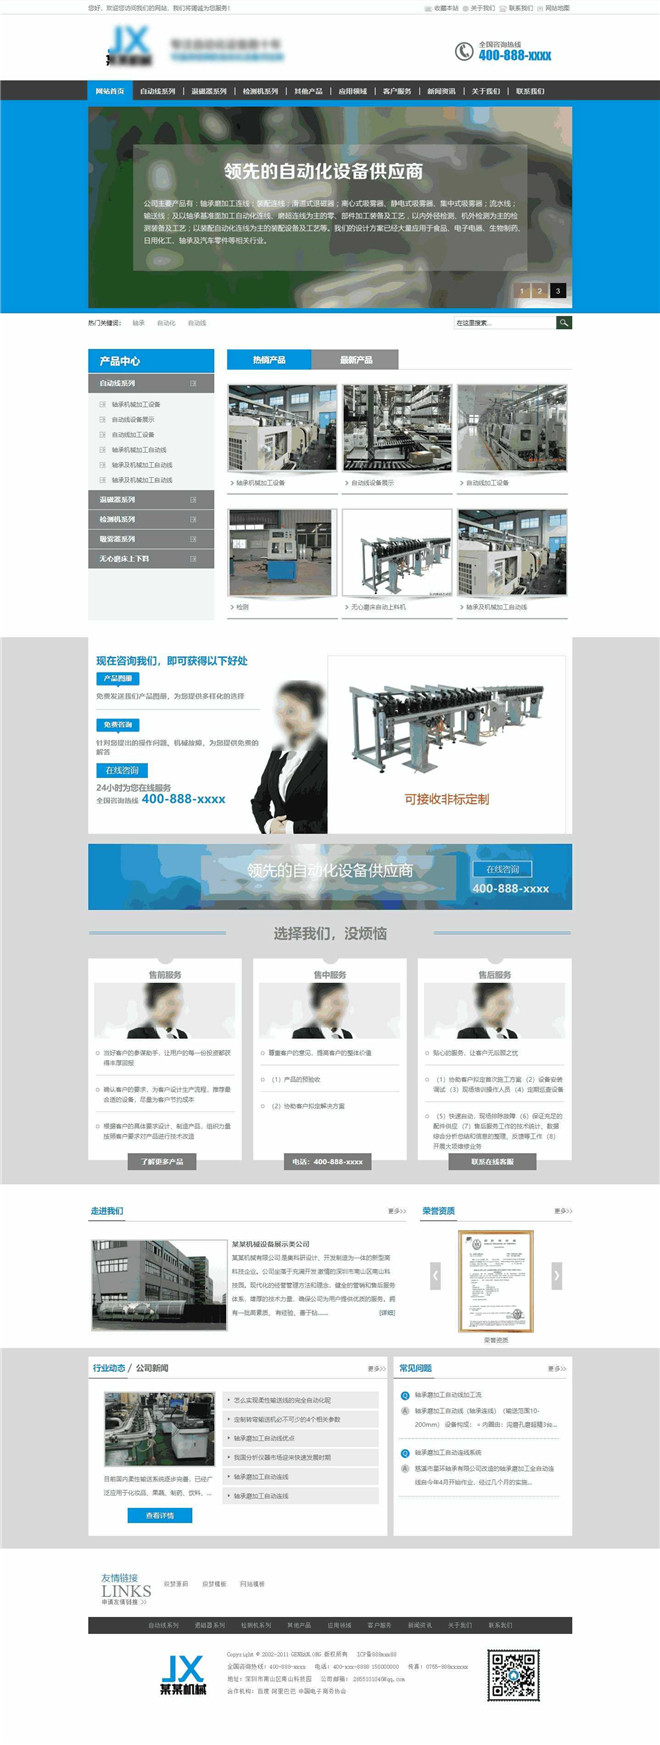 自动化机械设备公司企业类网站模板截图